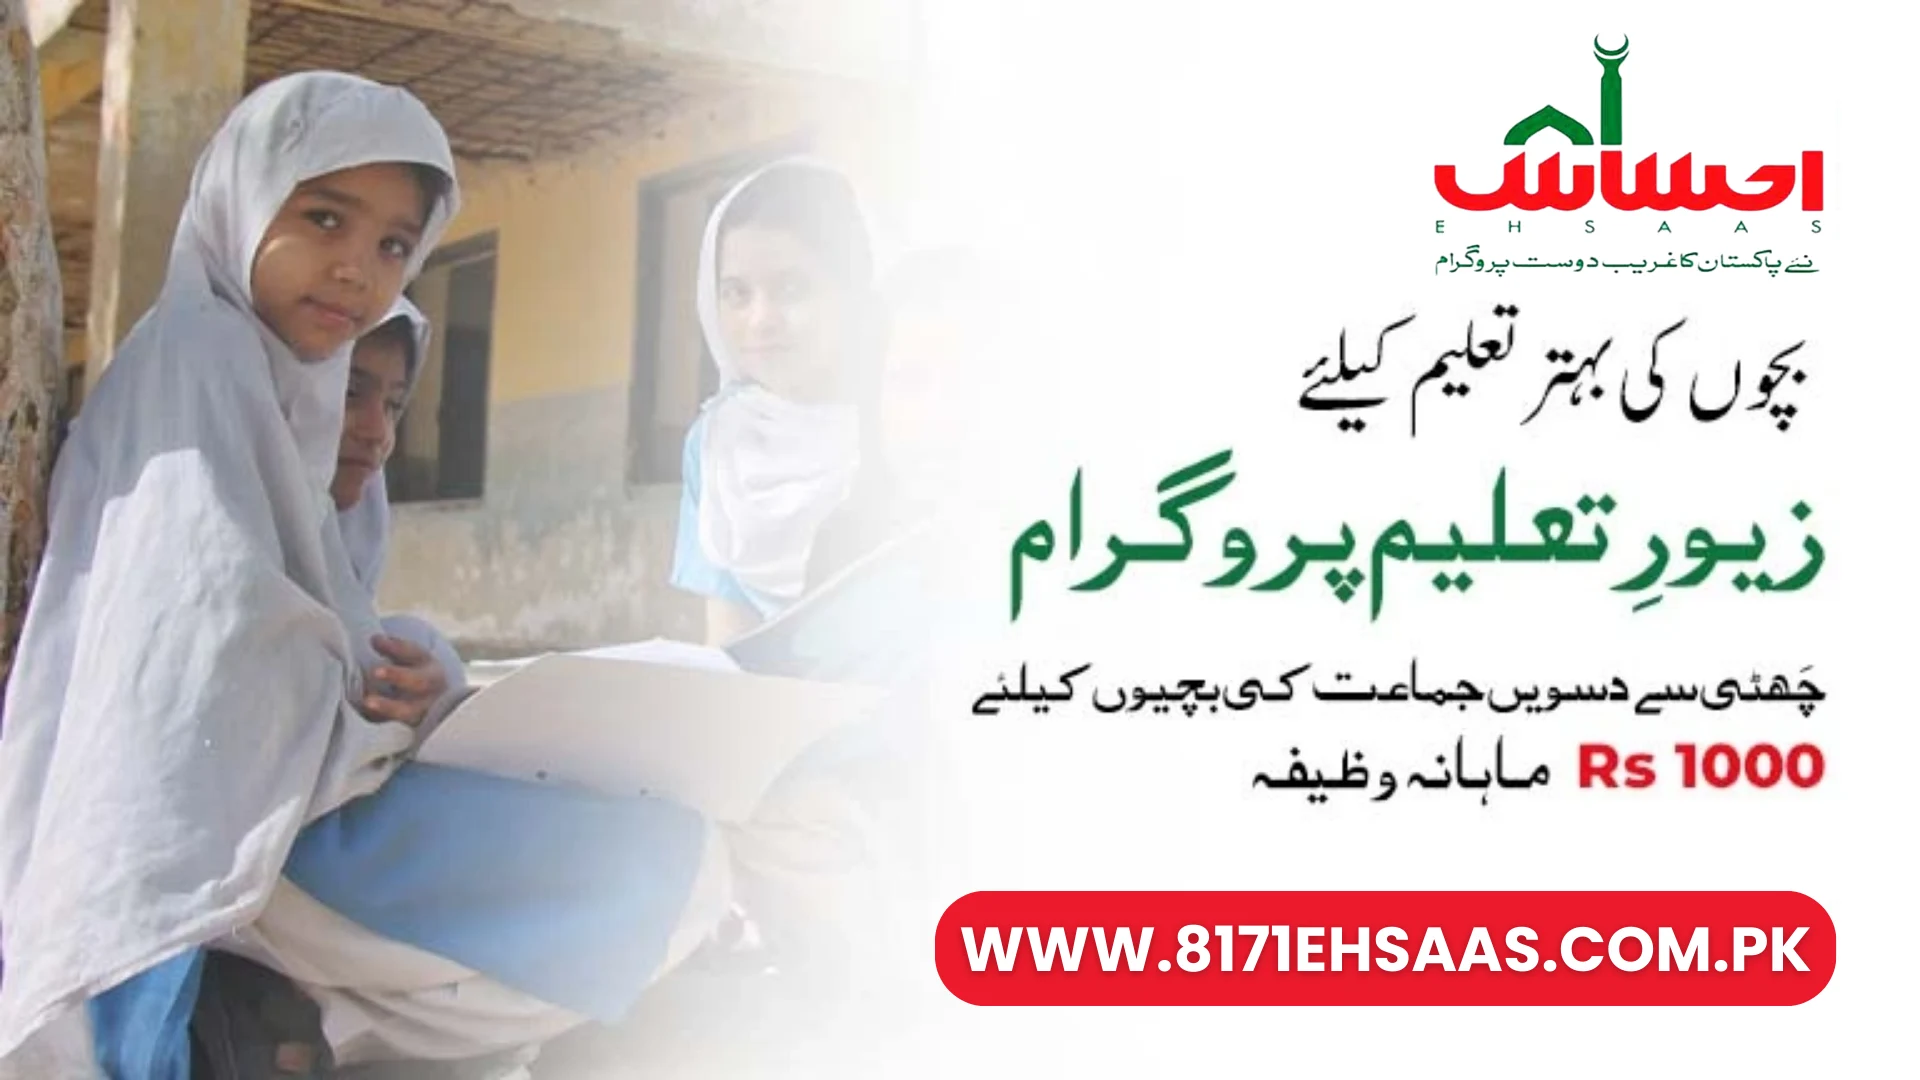 Zewar-e-Taleem Program Online Registration